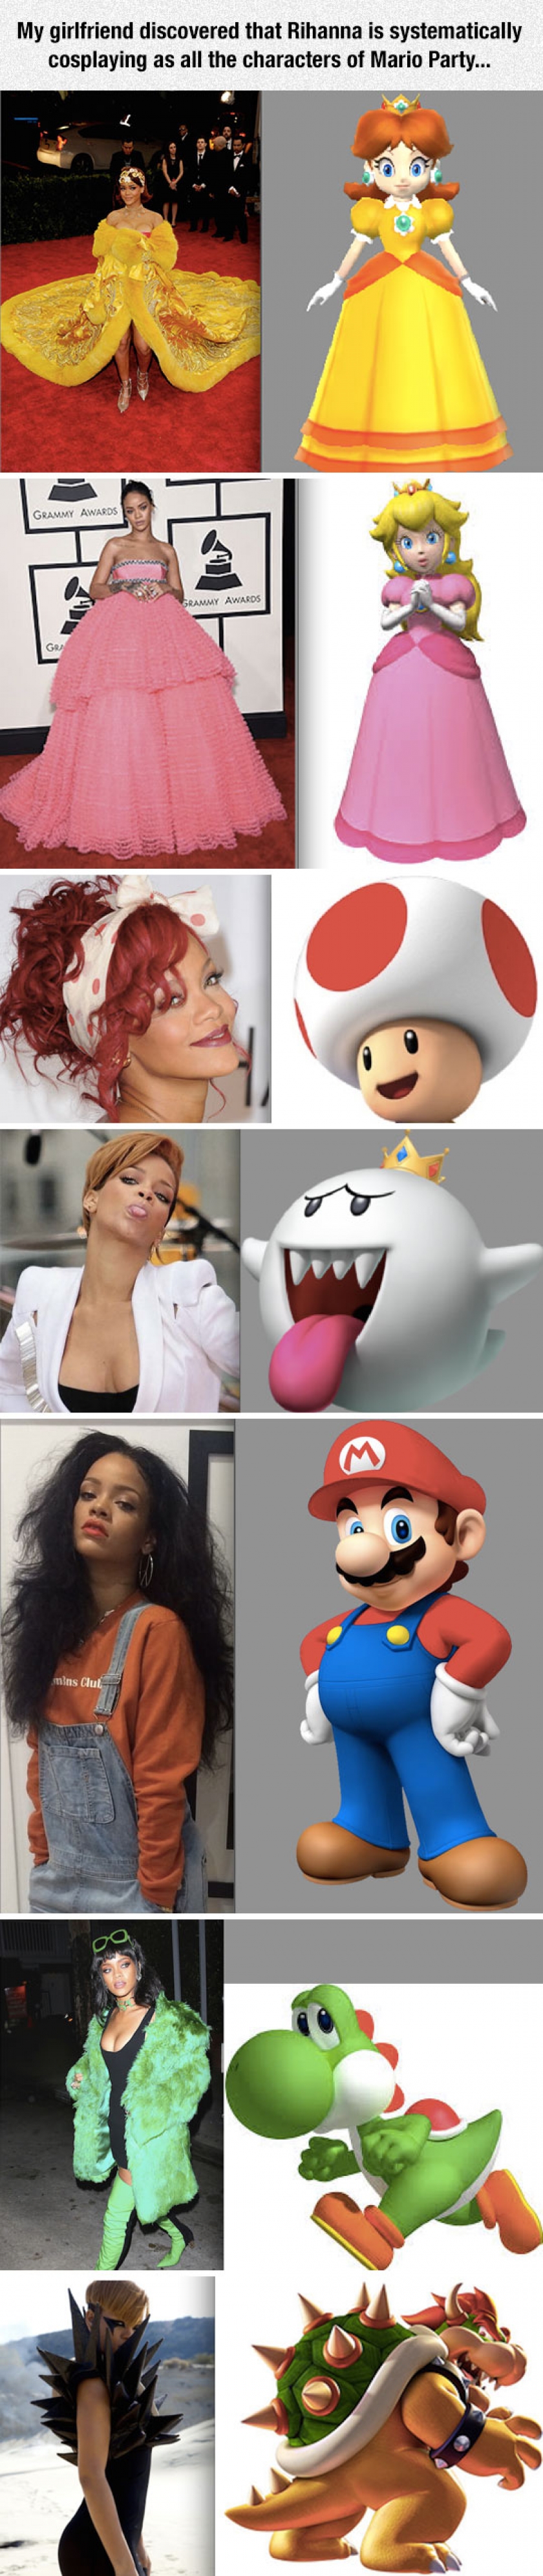 Rihanna Cosplaying Mario Party